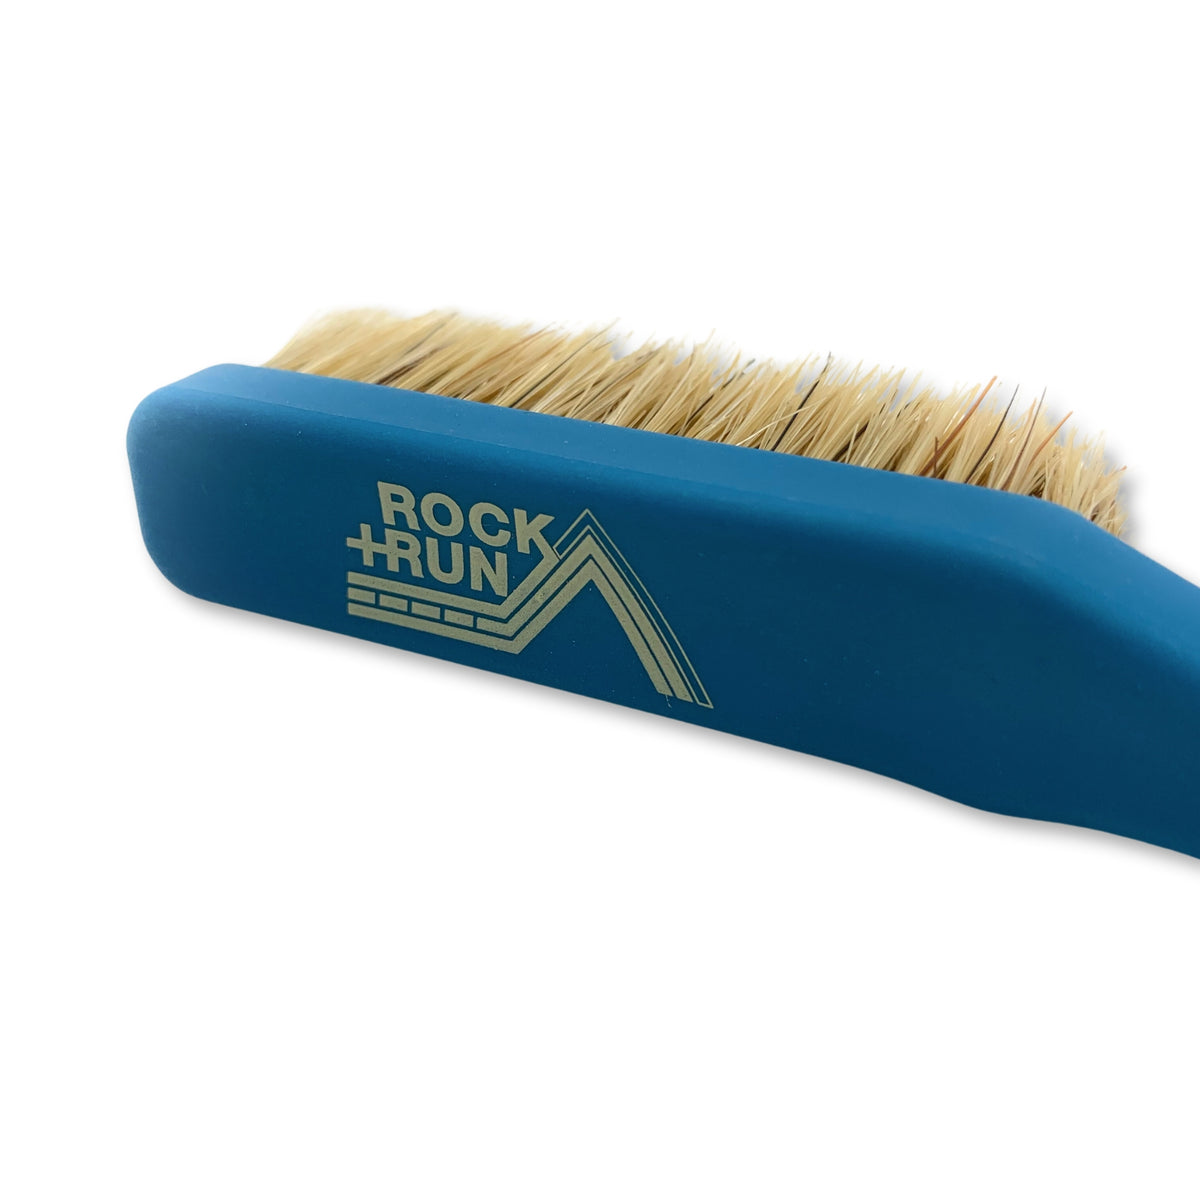 Rock + Run Boars Hair Brush